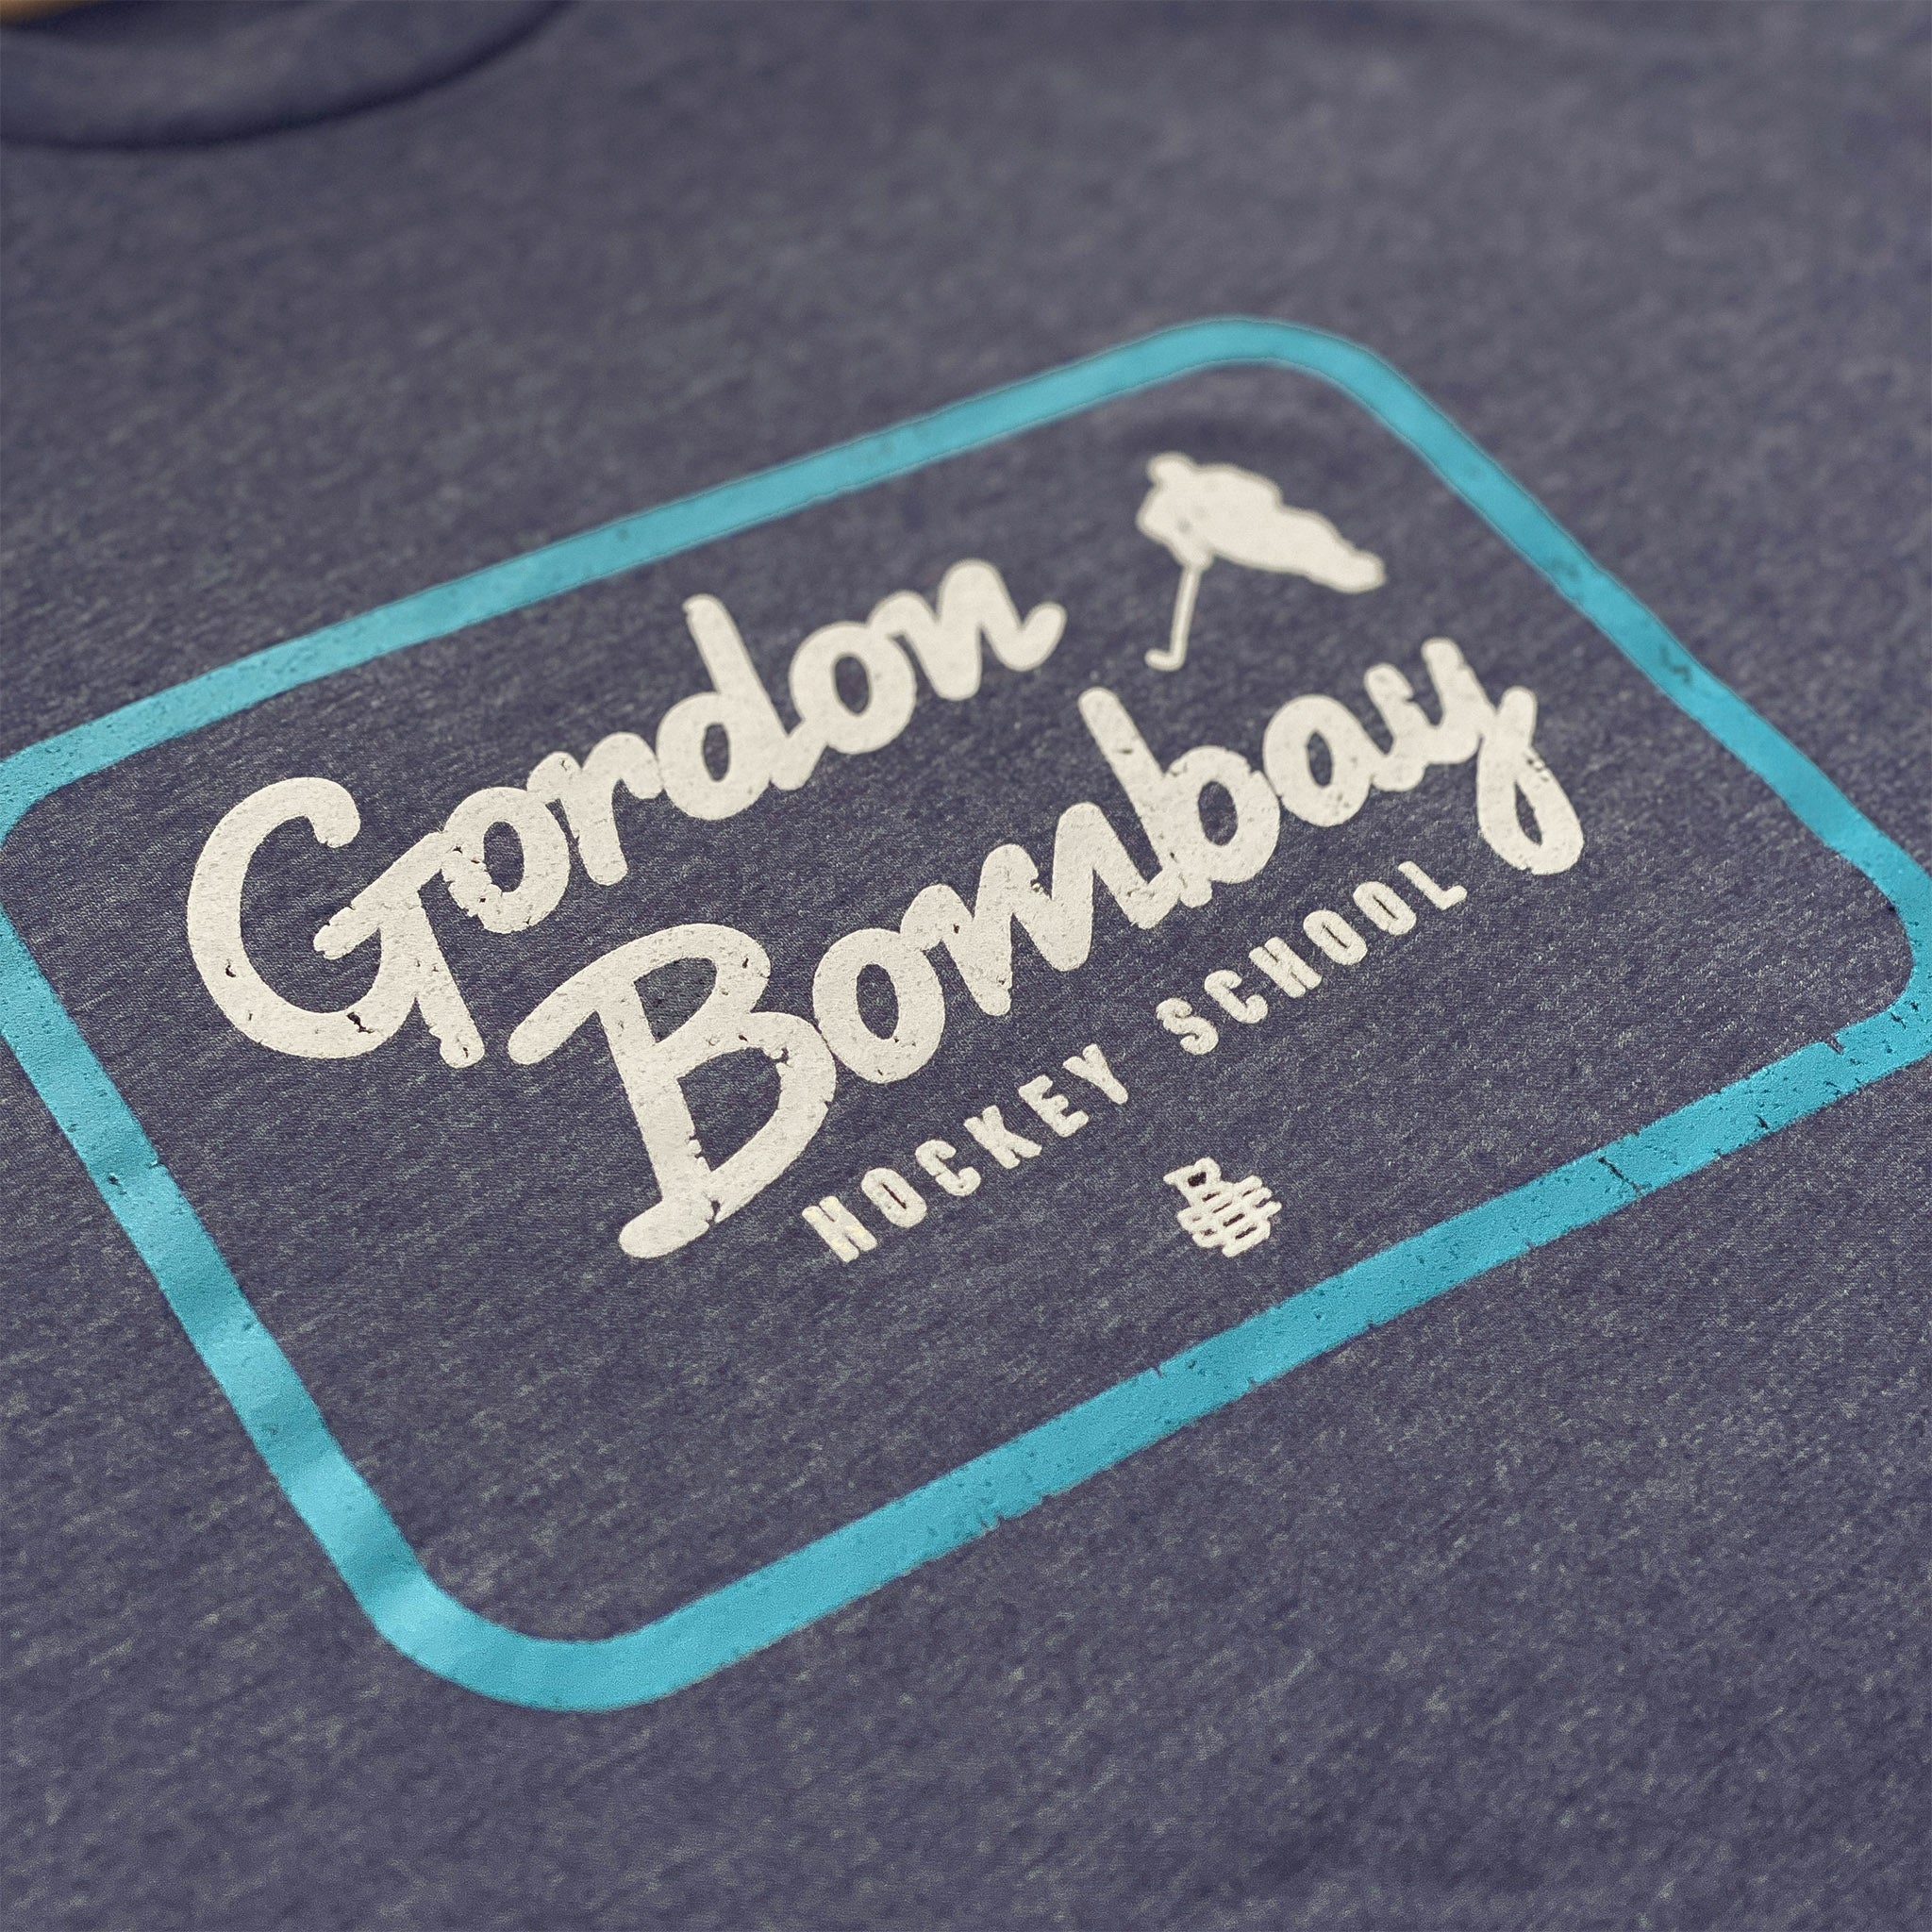 Gordon Bombay Shirt 